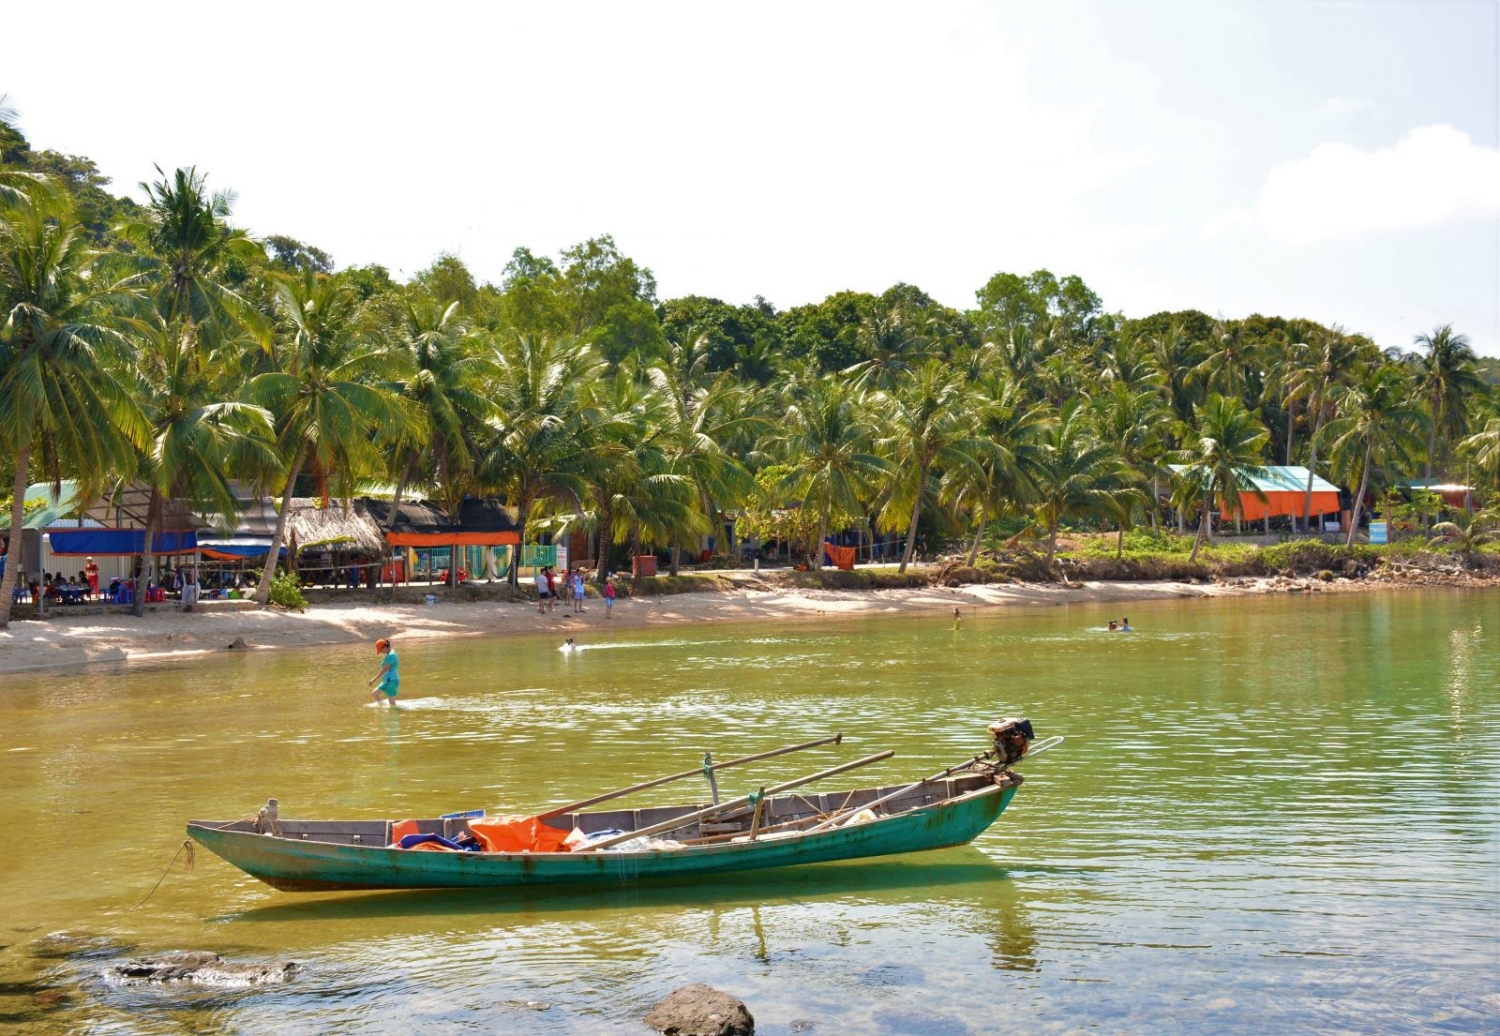 Bãi cát trắng trải dài bao quanh các đảo cùng nước non một màu xanh biếc tạo nên những “bức tranh tuyệt sắc”.